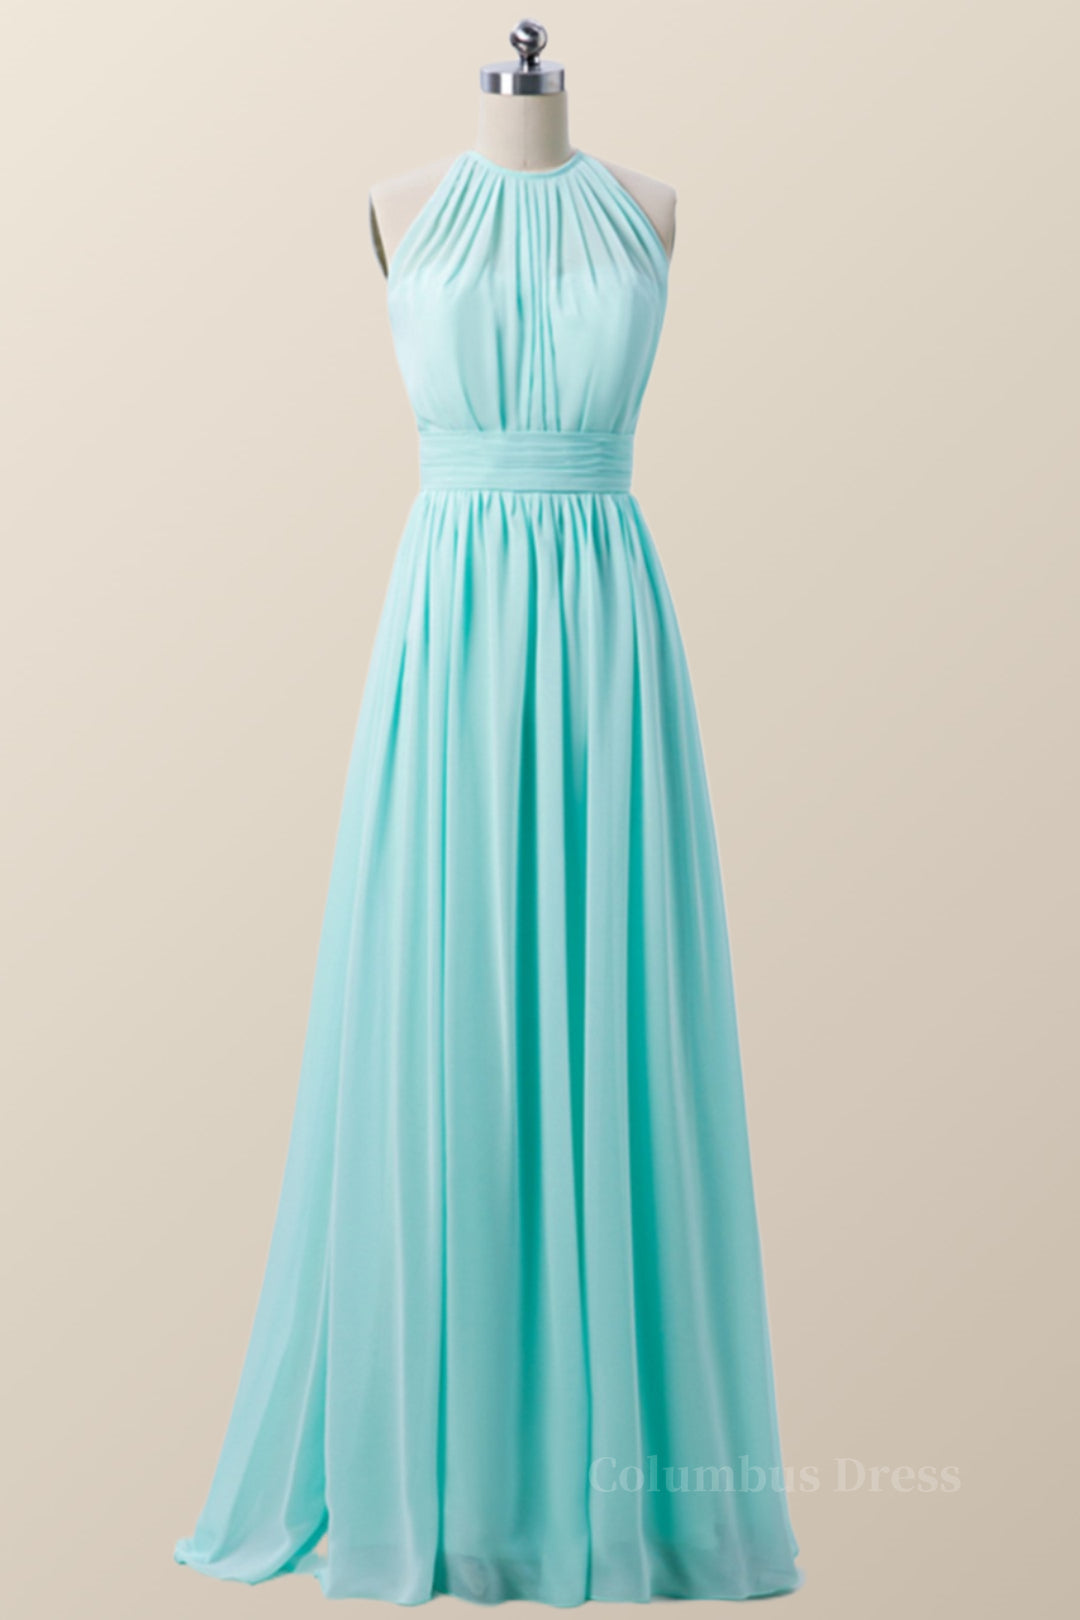 Homecoming Dress With Sleeves, Halter Blue Chiffon Long Bridesmaid Dress